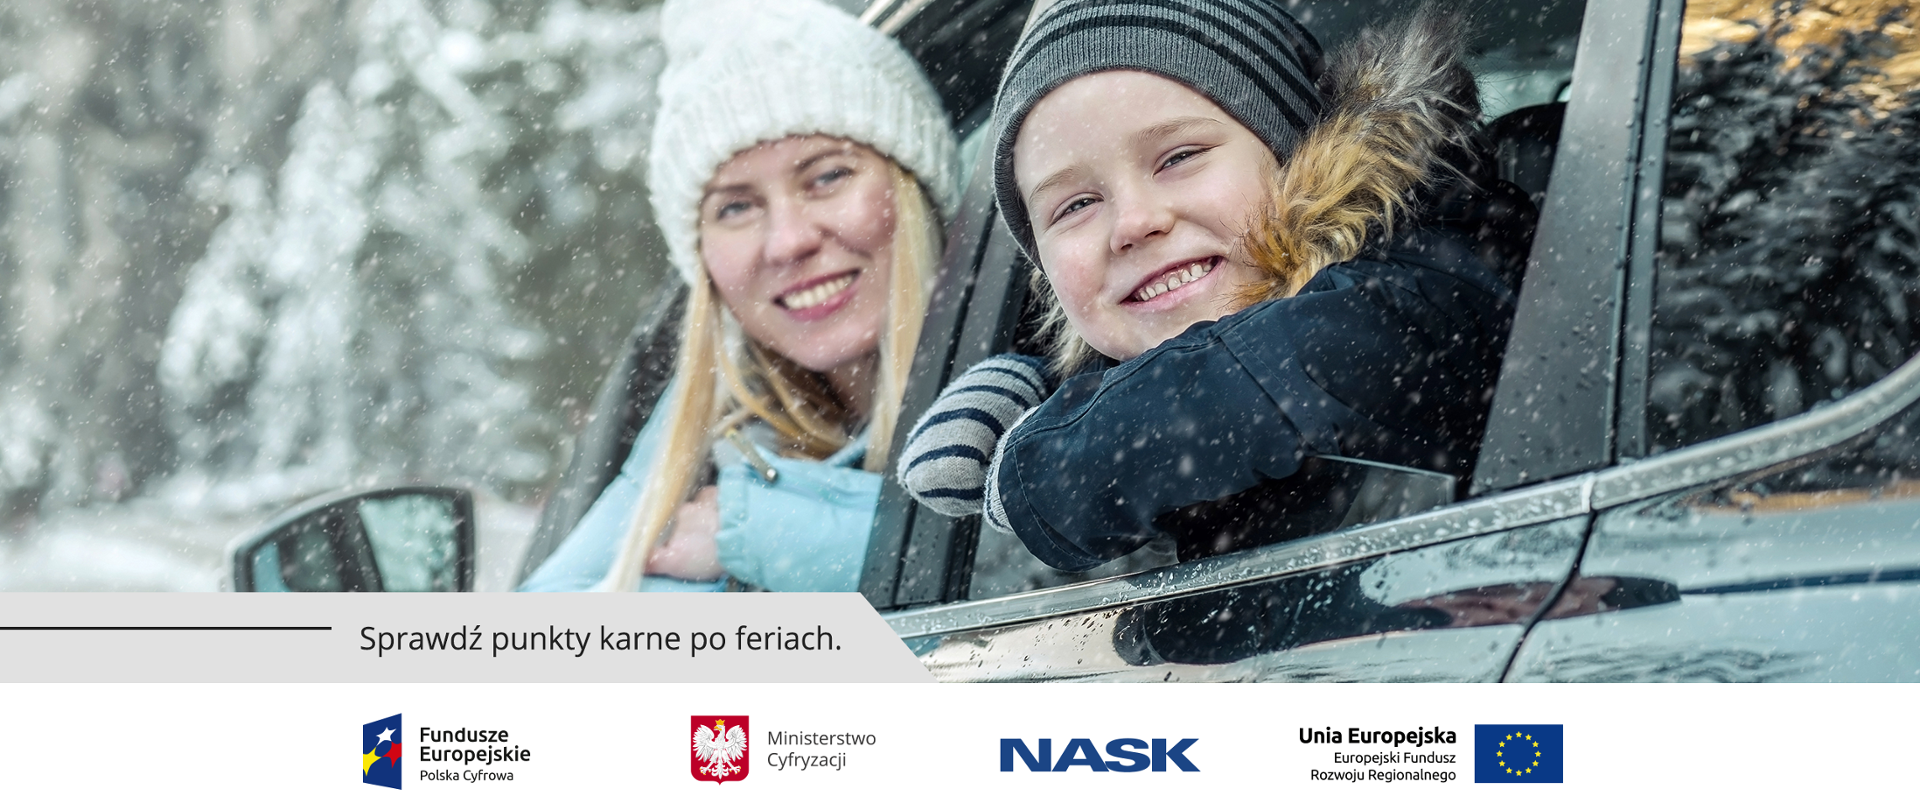 Uśmiechnięci - kobieta i dziecko - wychylają się przez okna samochodu. Oboje w zimowych ubraniach. Pada śnieg.